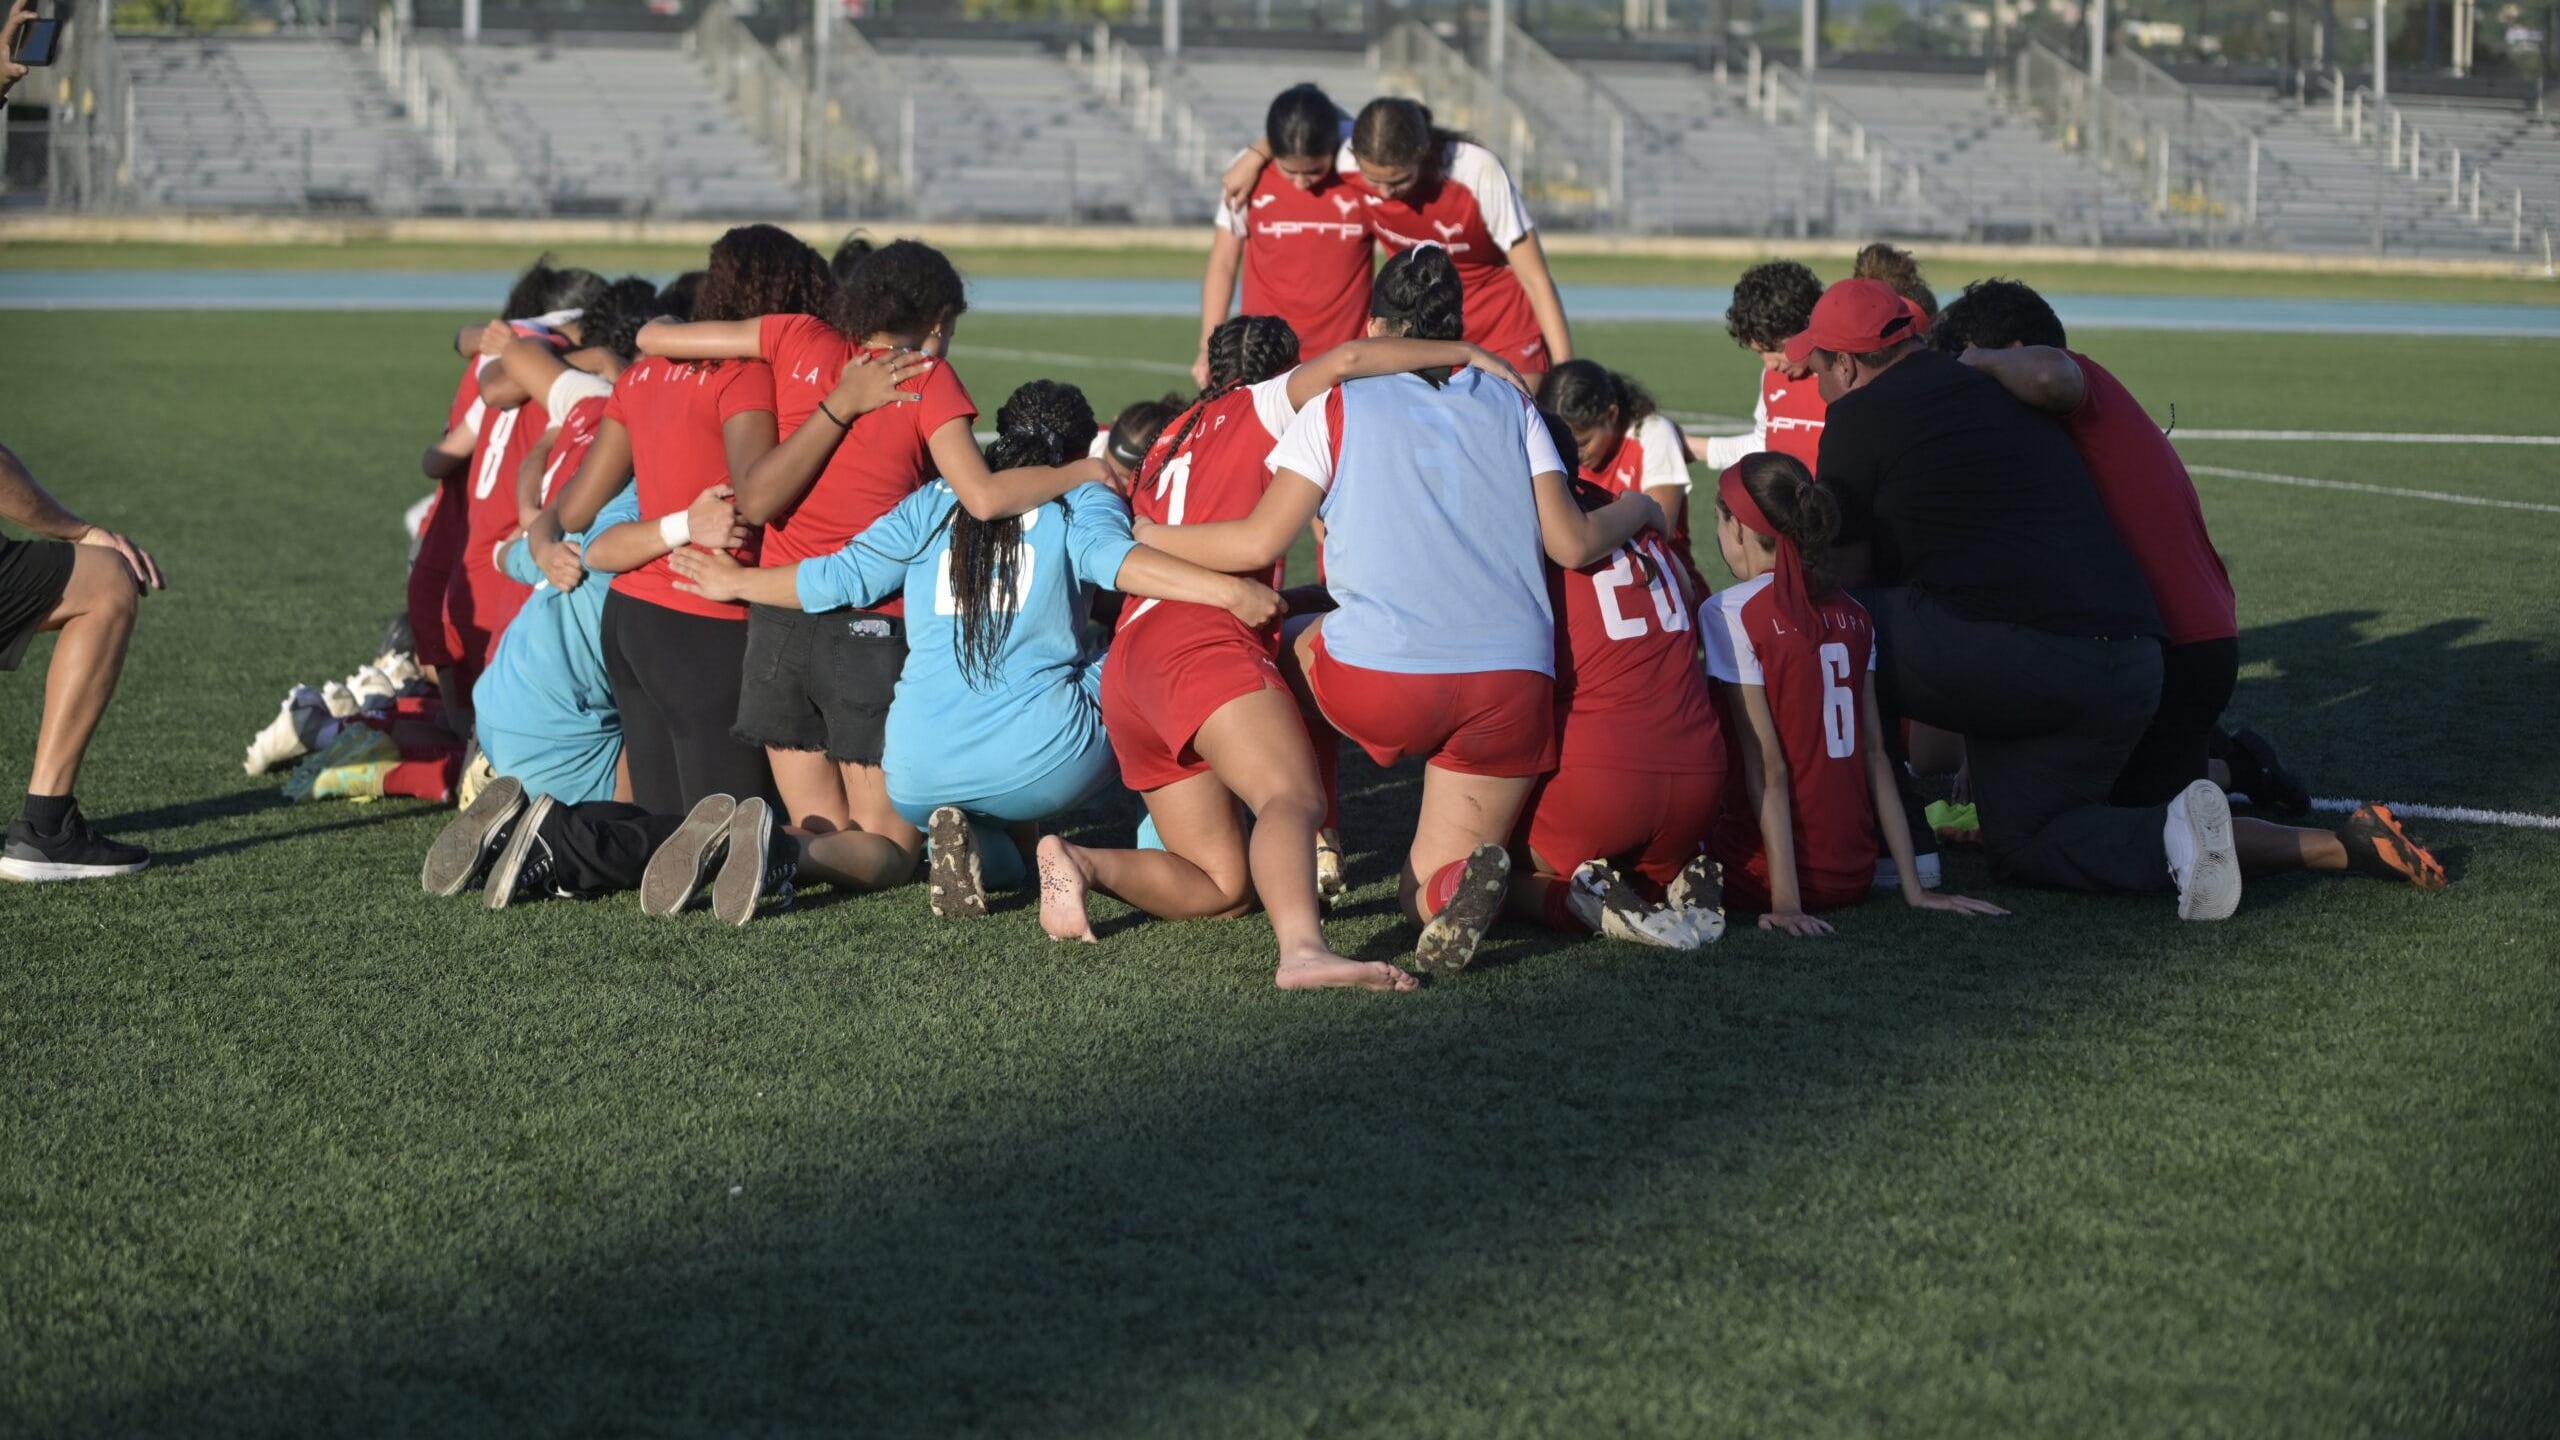 Jerezanas de la UPR de Río Piedras eliminan a las campeonas Juanas de la UPR Mayagüez en el fútbol